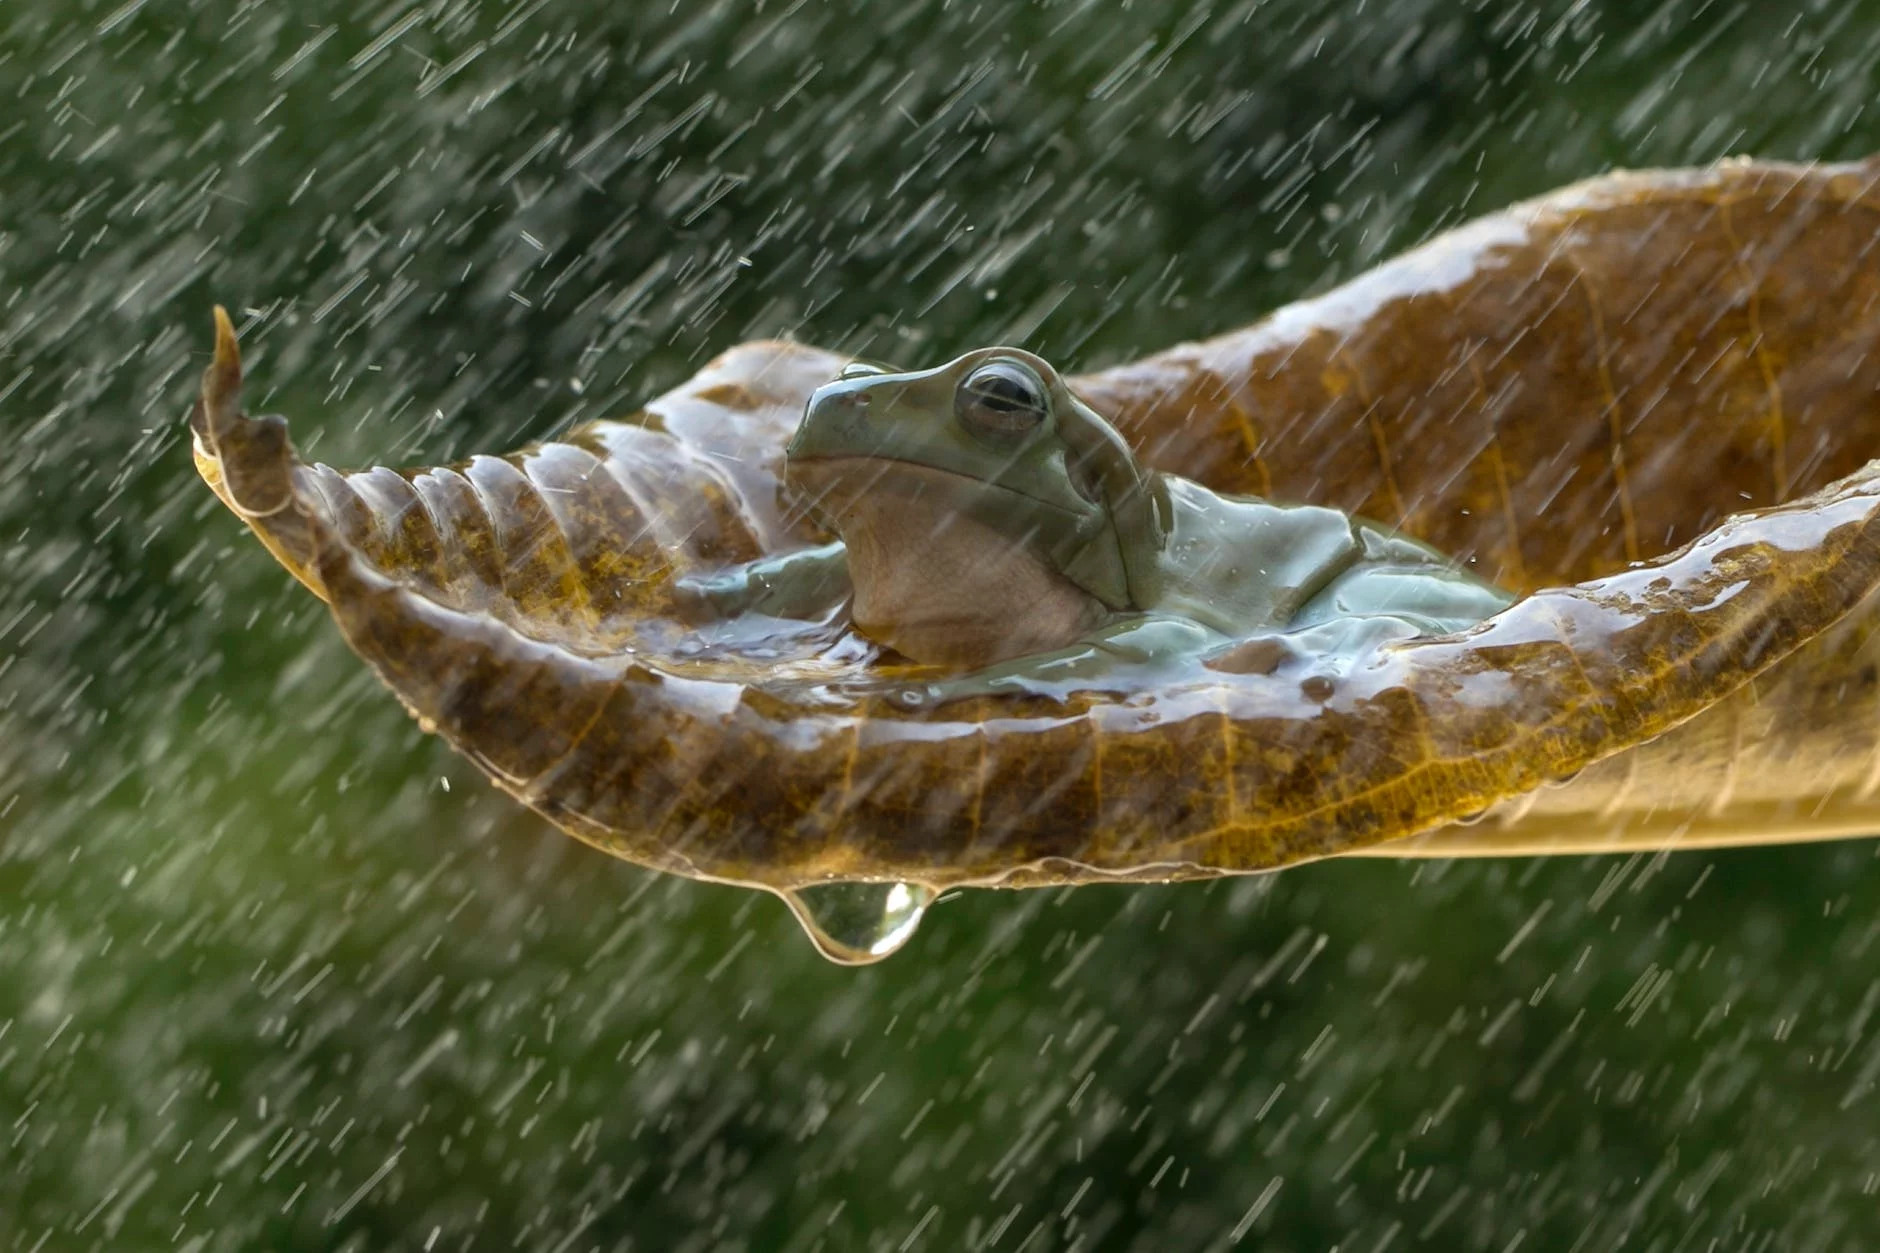 frog sitting on a leaf in rain